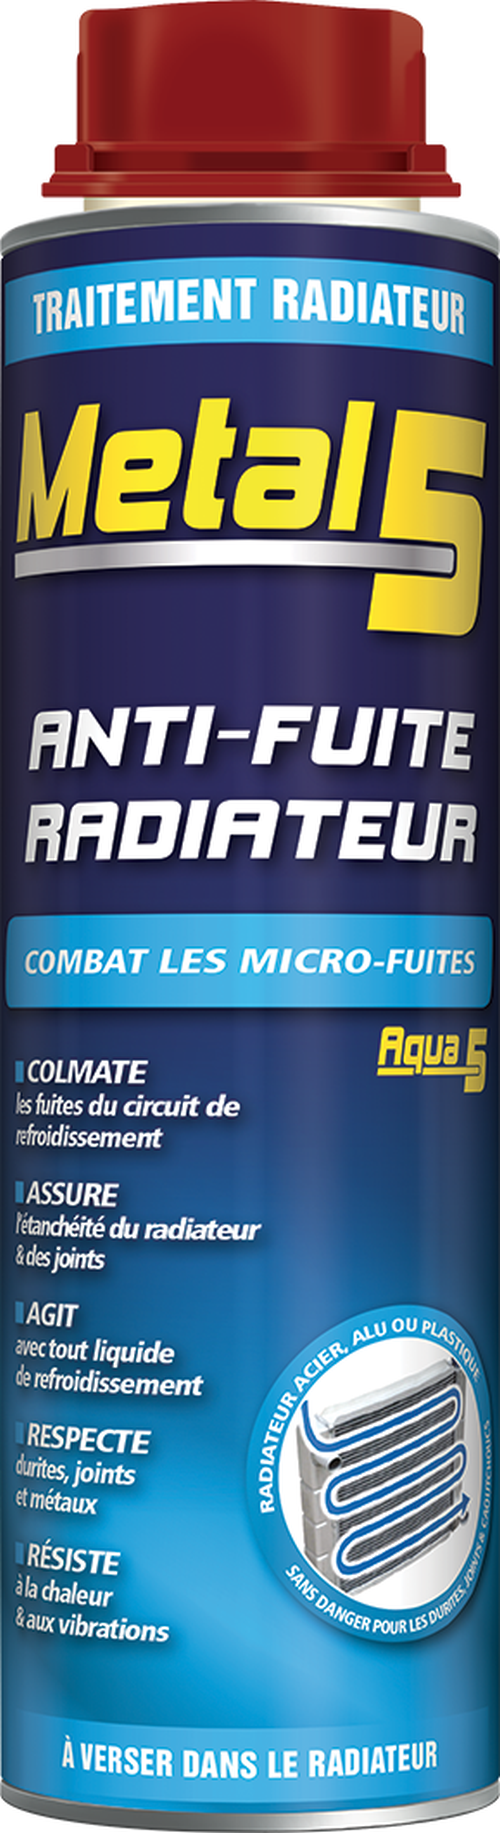 Anti-Fuite Radiateur METAL 5 - Roady